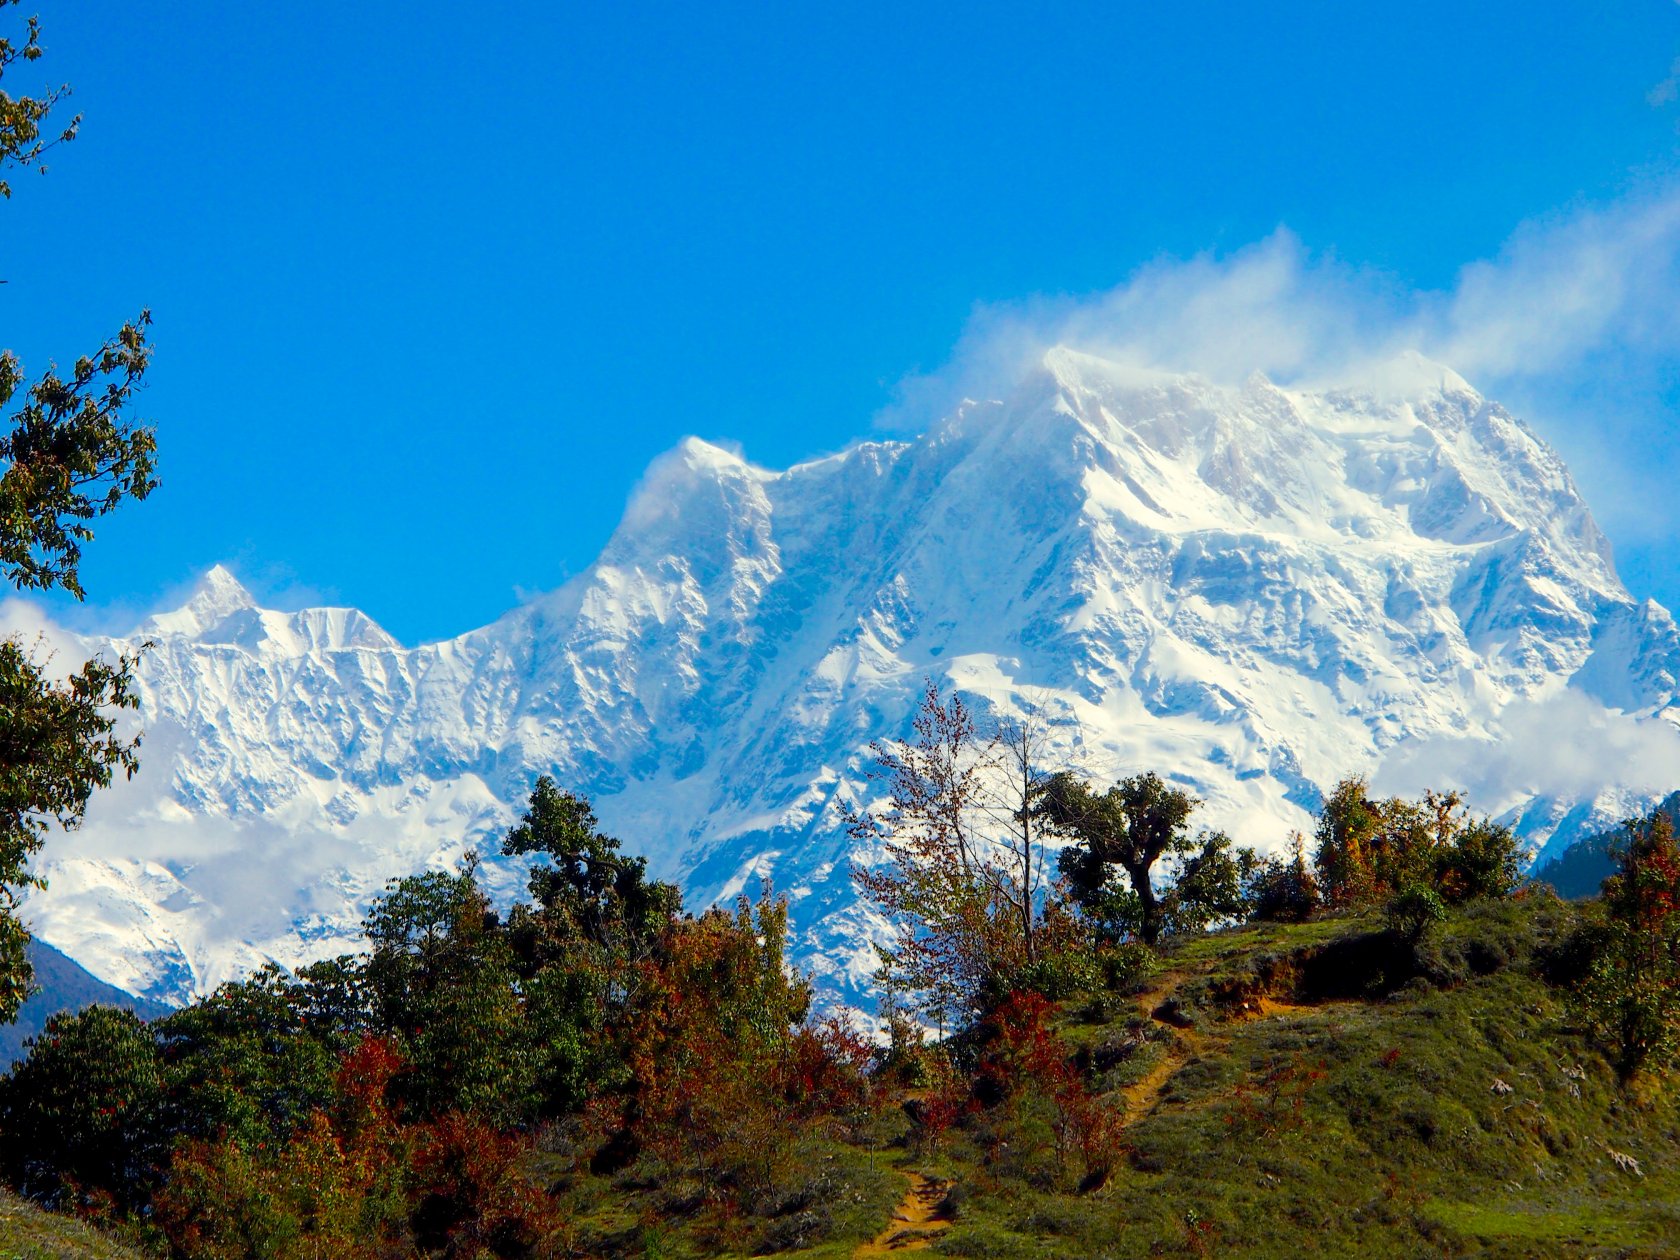 Склоны гималаев. Непал Гималаи. Индия горы Гималаи. Горный массив в Гималаях. Тибет Эверест Гималаи.